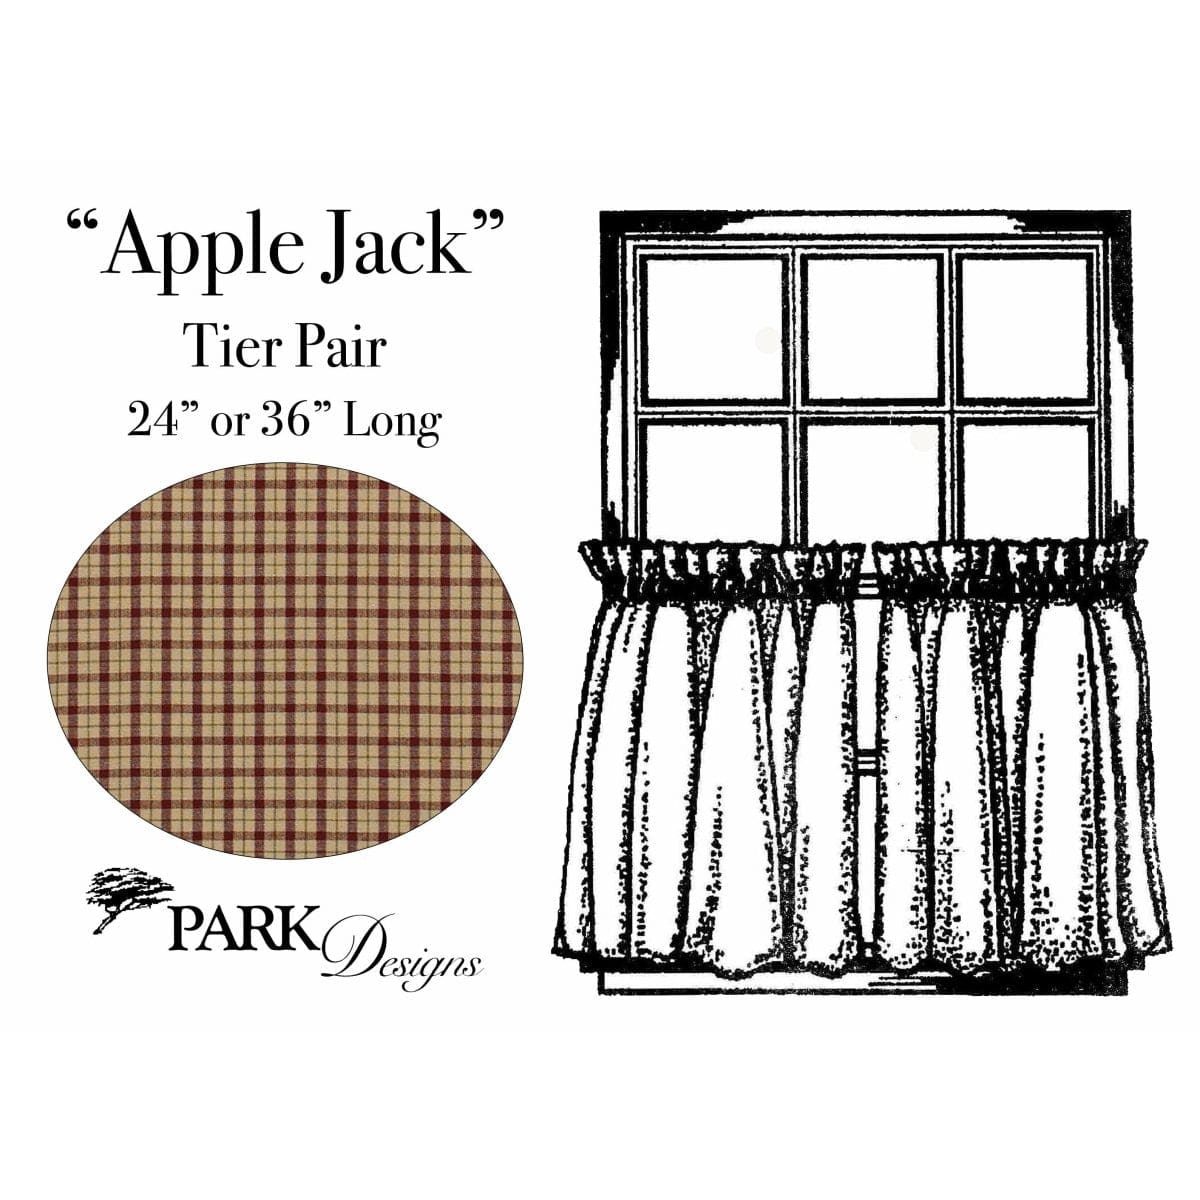 Apple Jack Tier Pair 36" Long Unlined-Park Designs-The Village Merchant